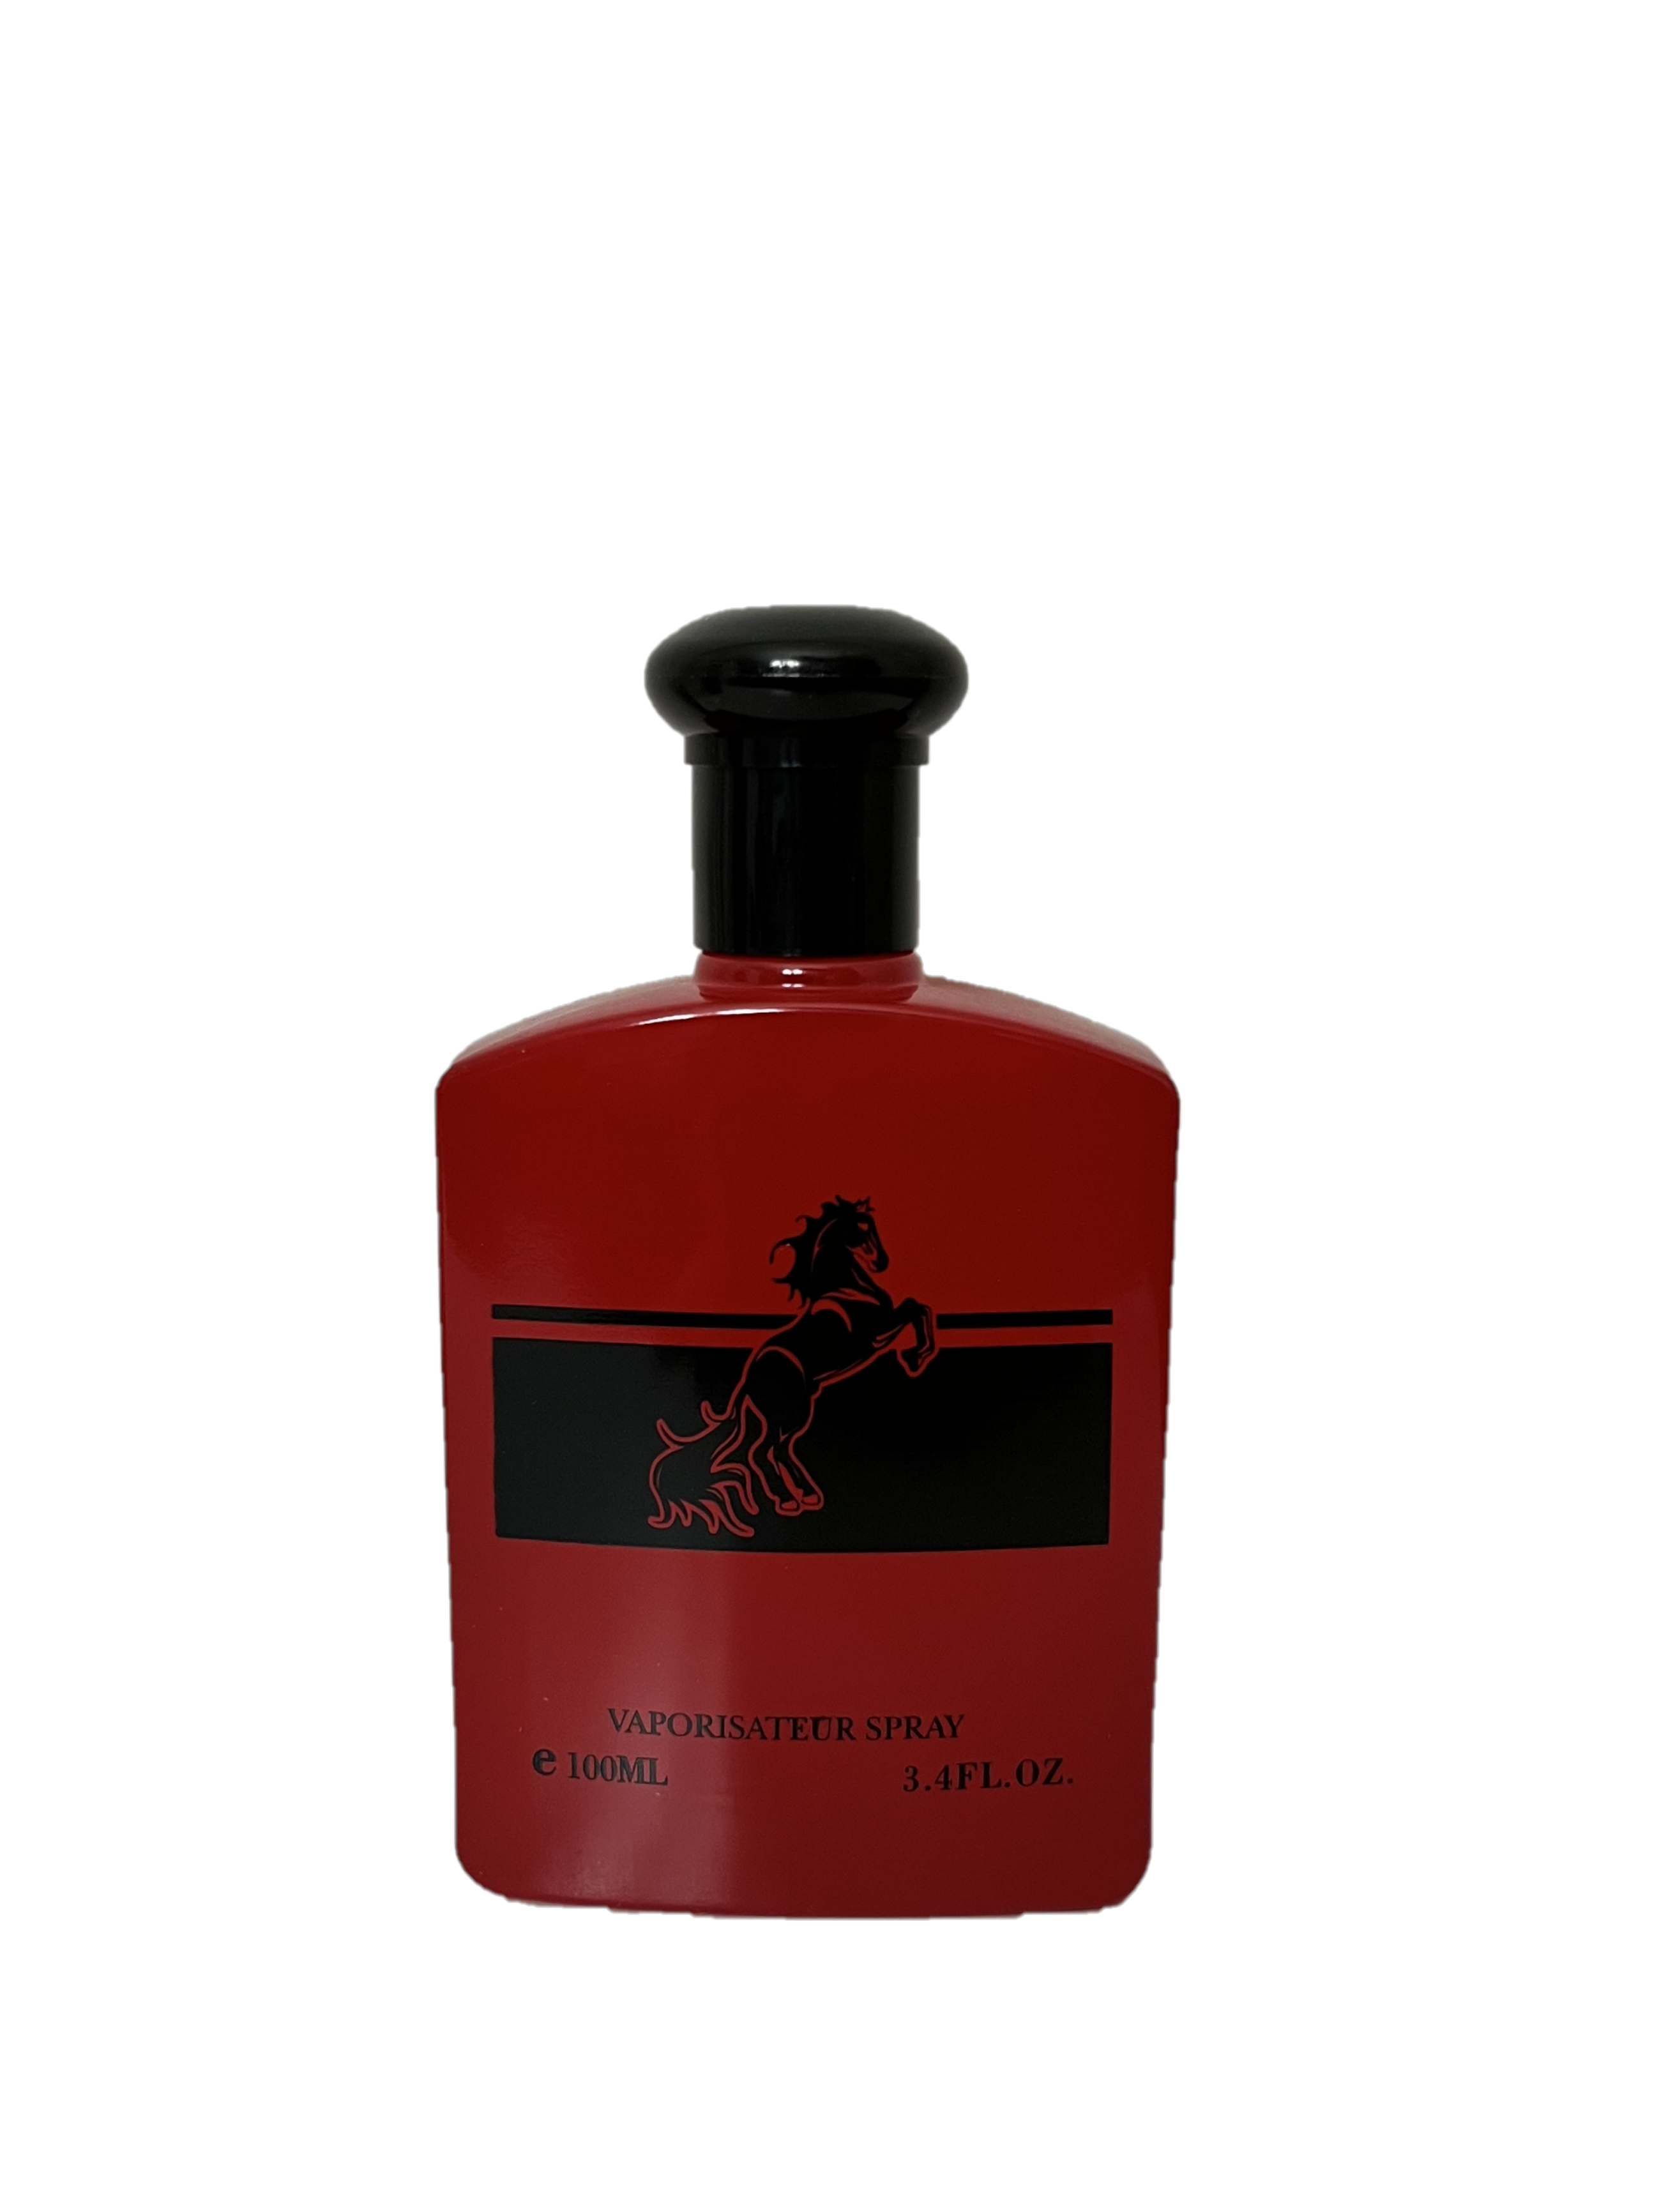  Hybrid & Company Donatello Uomo for Men Eau De Toilette  Natural Spray Masculine Scent, 3.4 Fl Oz : Beauty & Personal Care